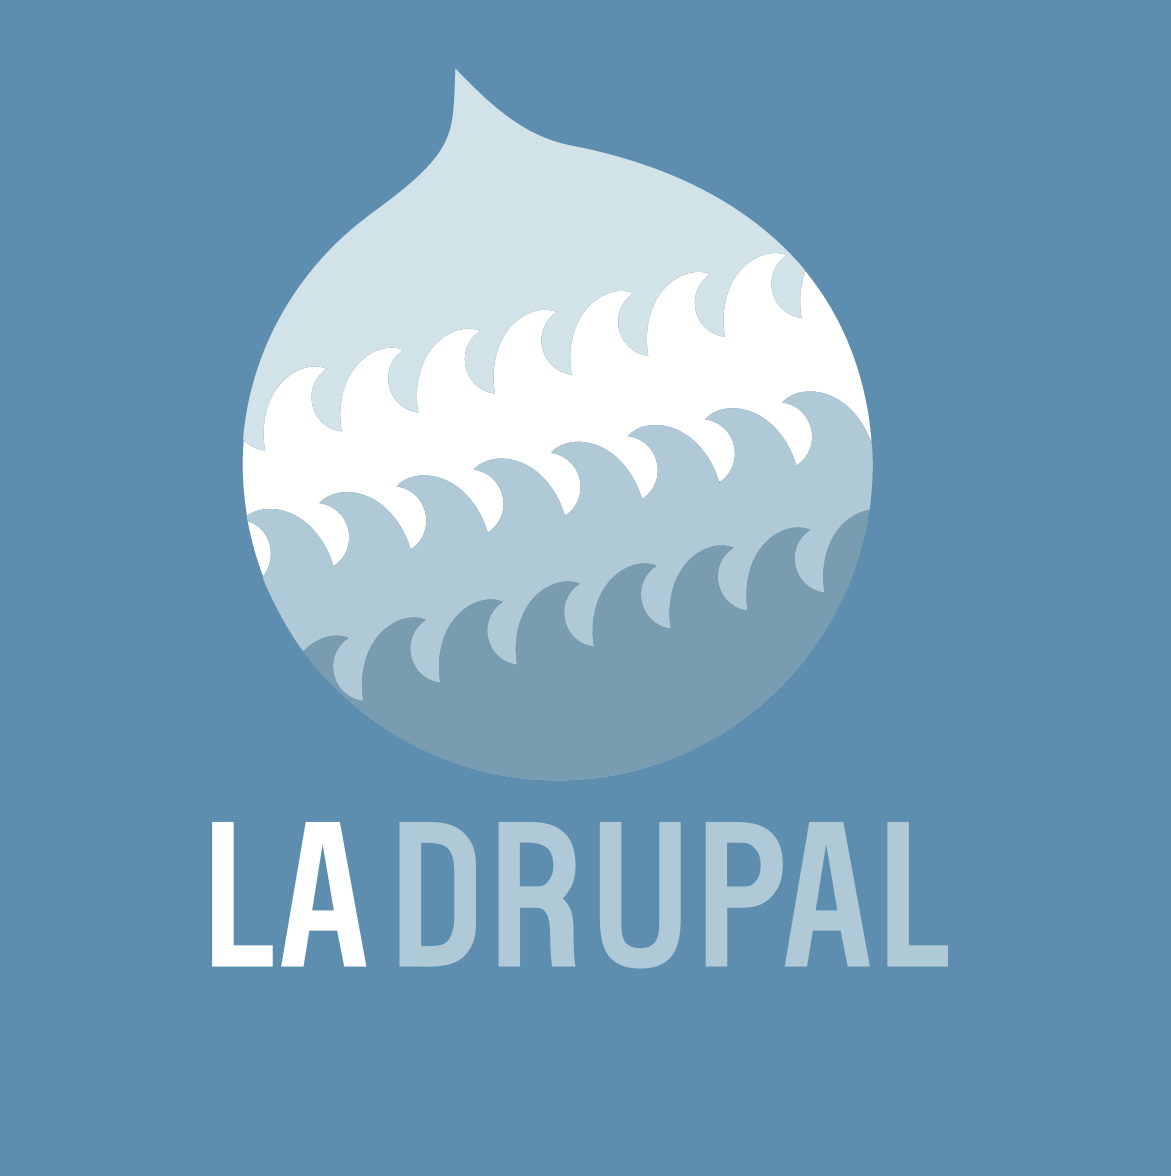 LA Drupal - Los Angeles Drupal User Group